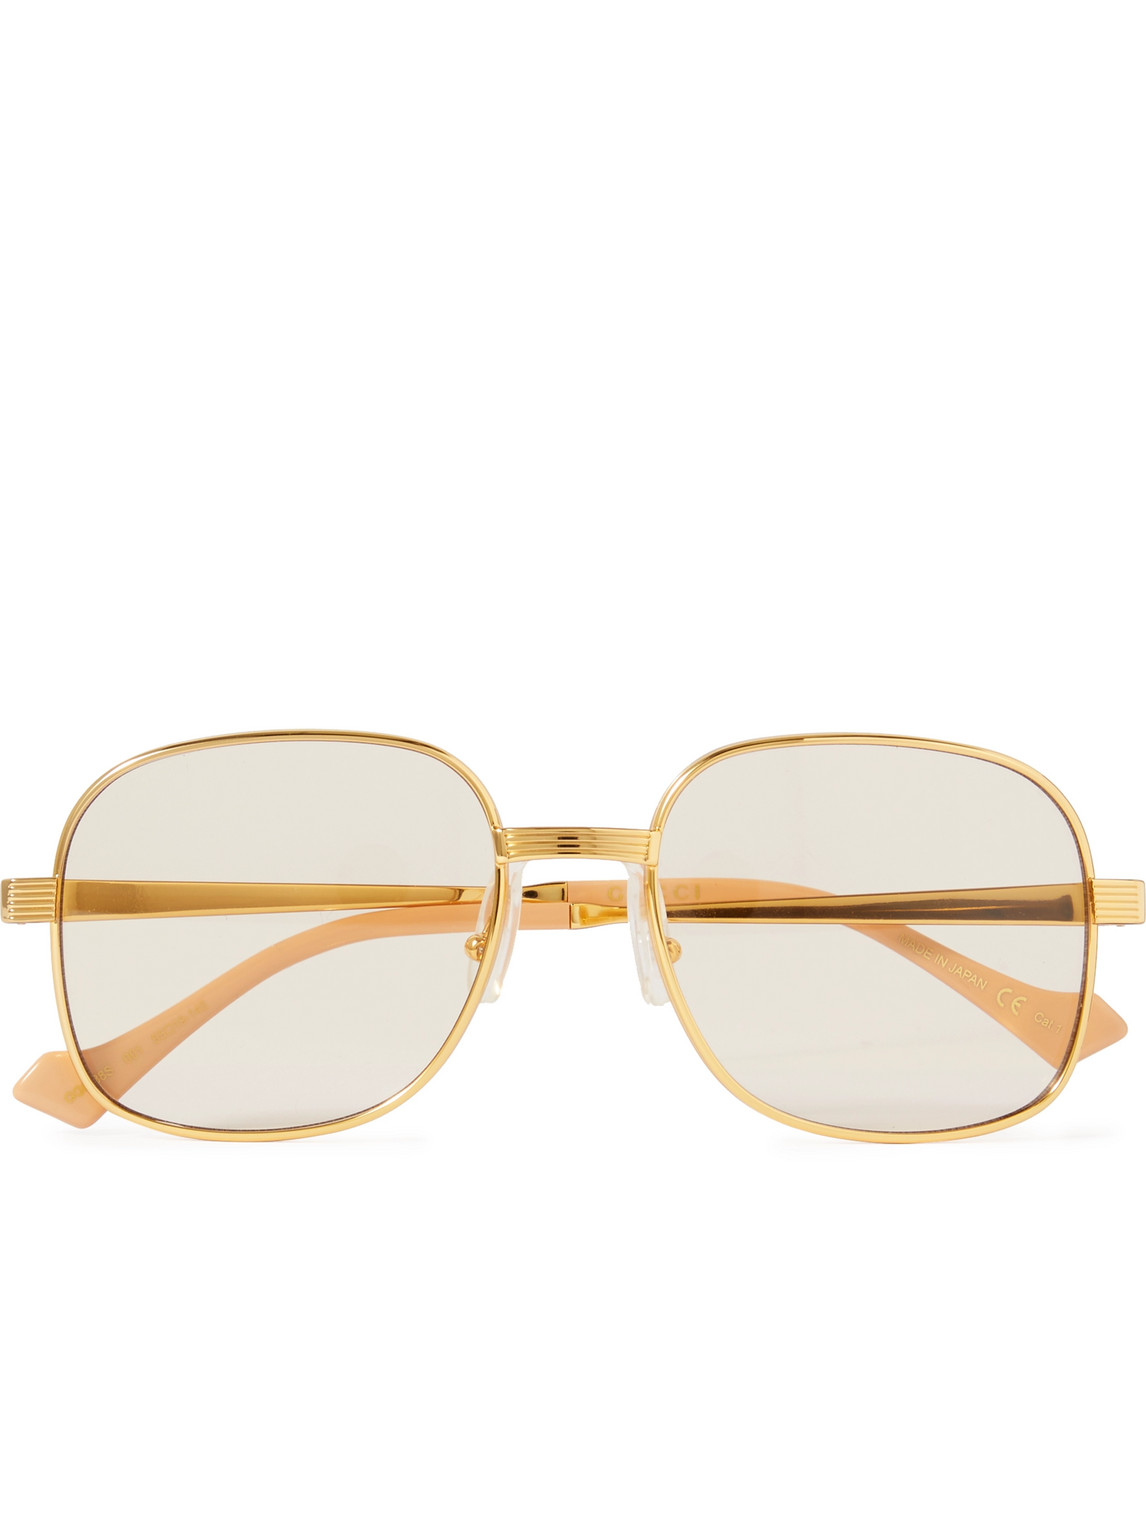 pintar extraño Comparar Gucci Eyewear - Round-Frame Gold-Tone Optical Glasses - Men - Gold de  Hombres